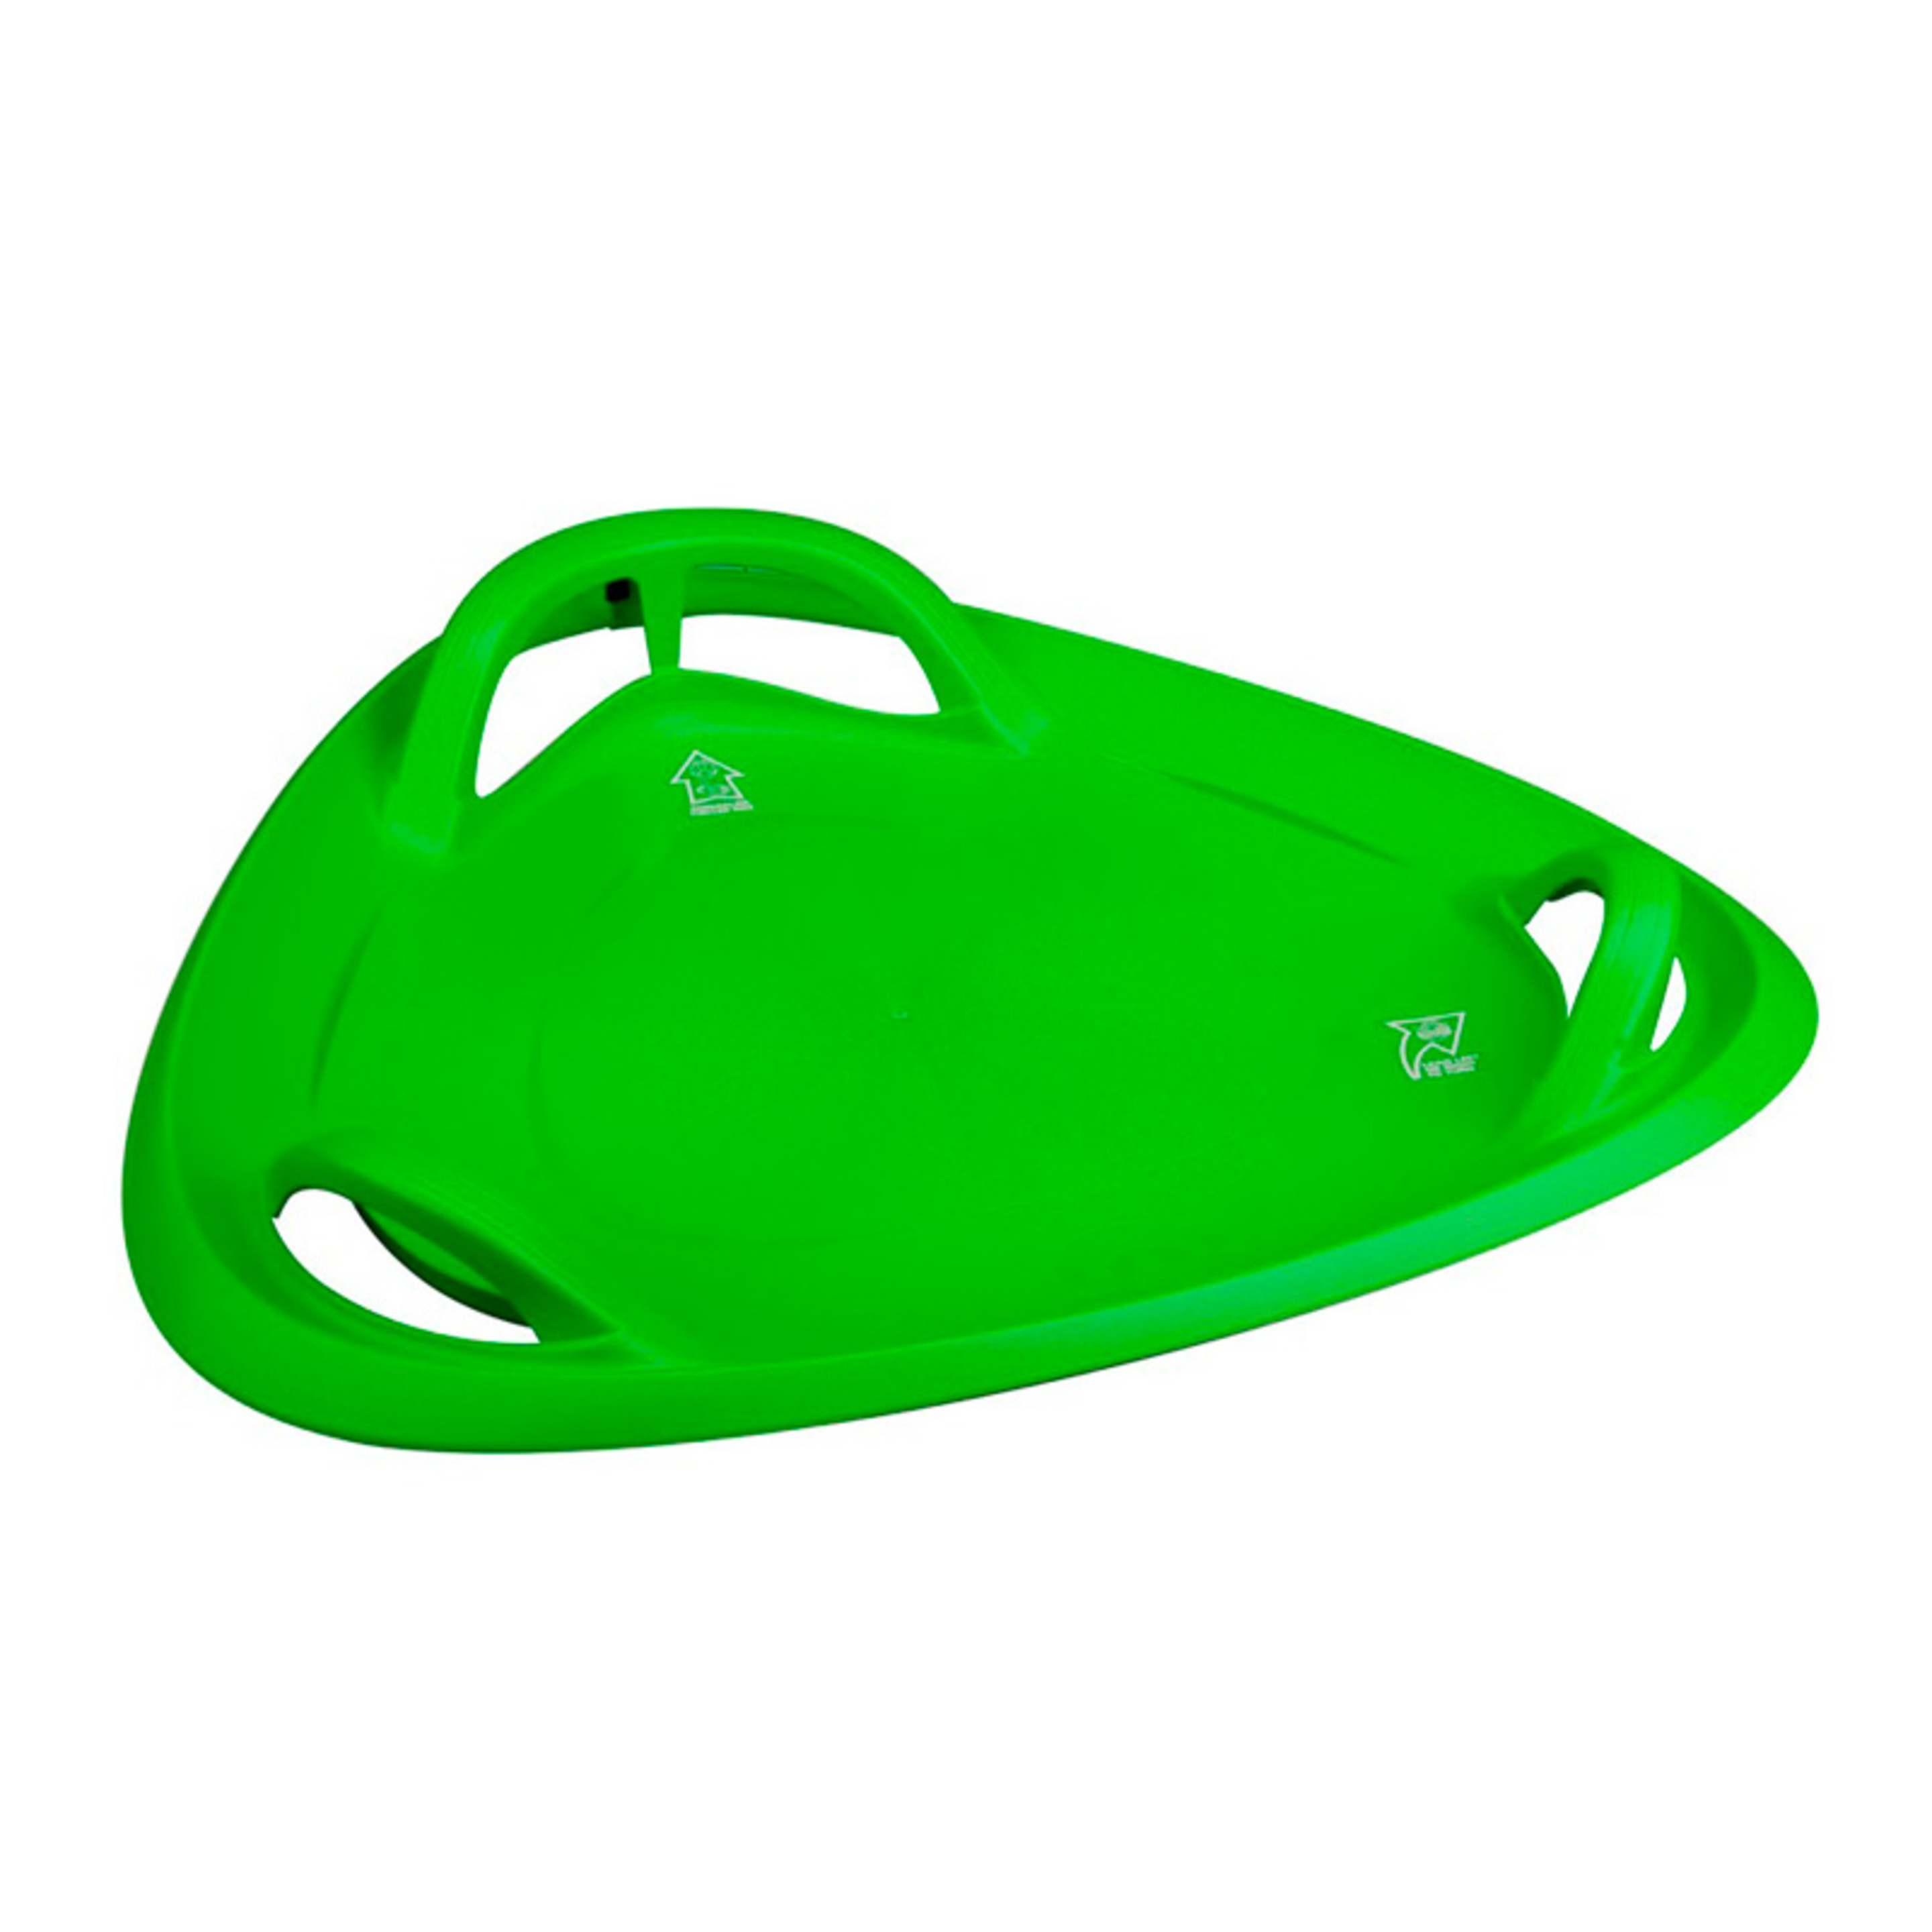 Sr Di Trineo Triangulo Plastico Verde - verde - 